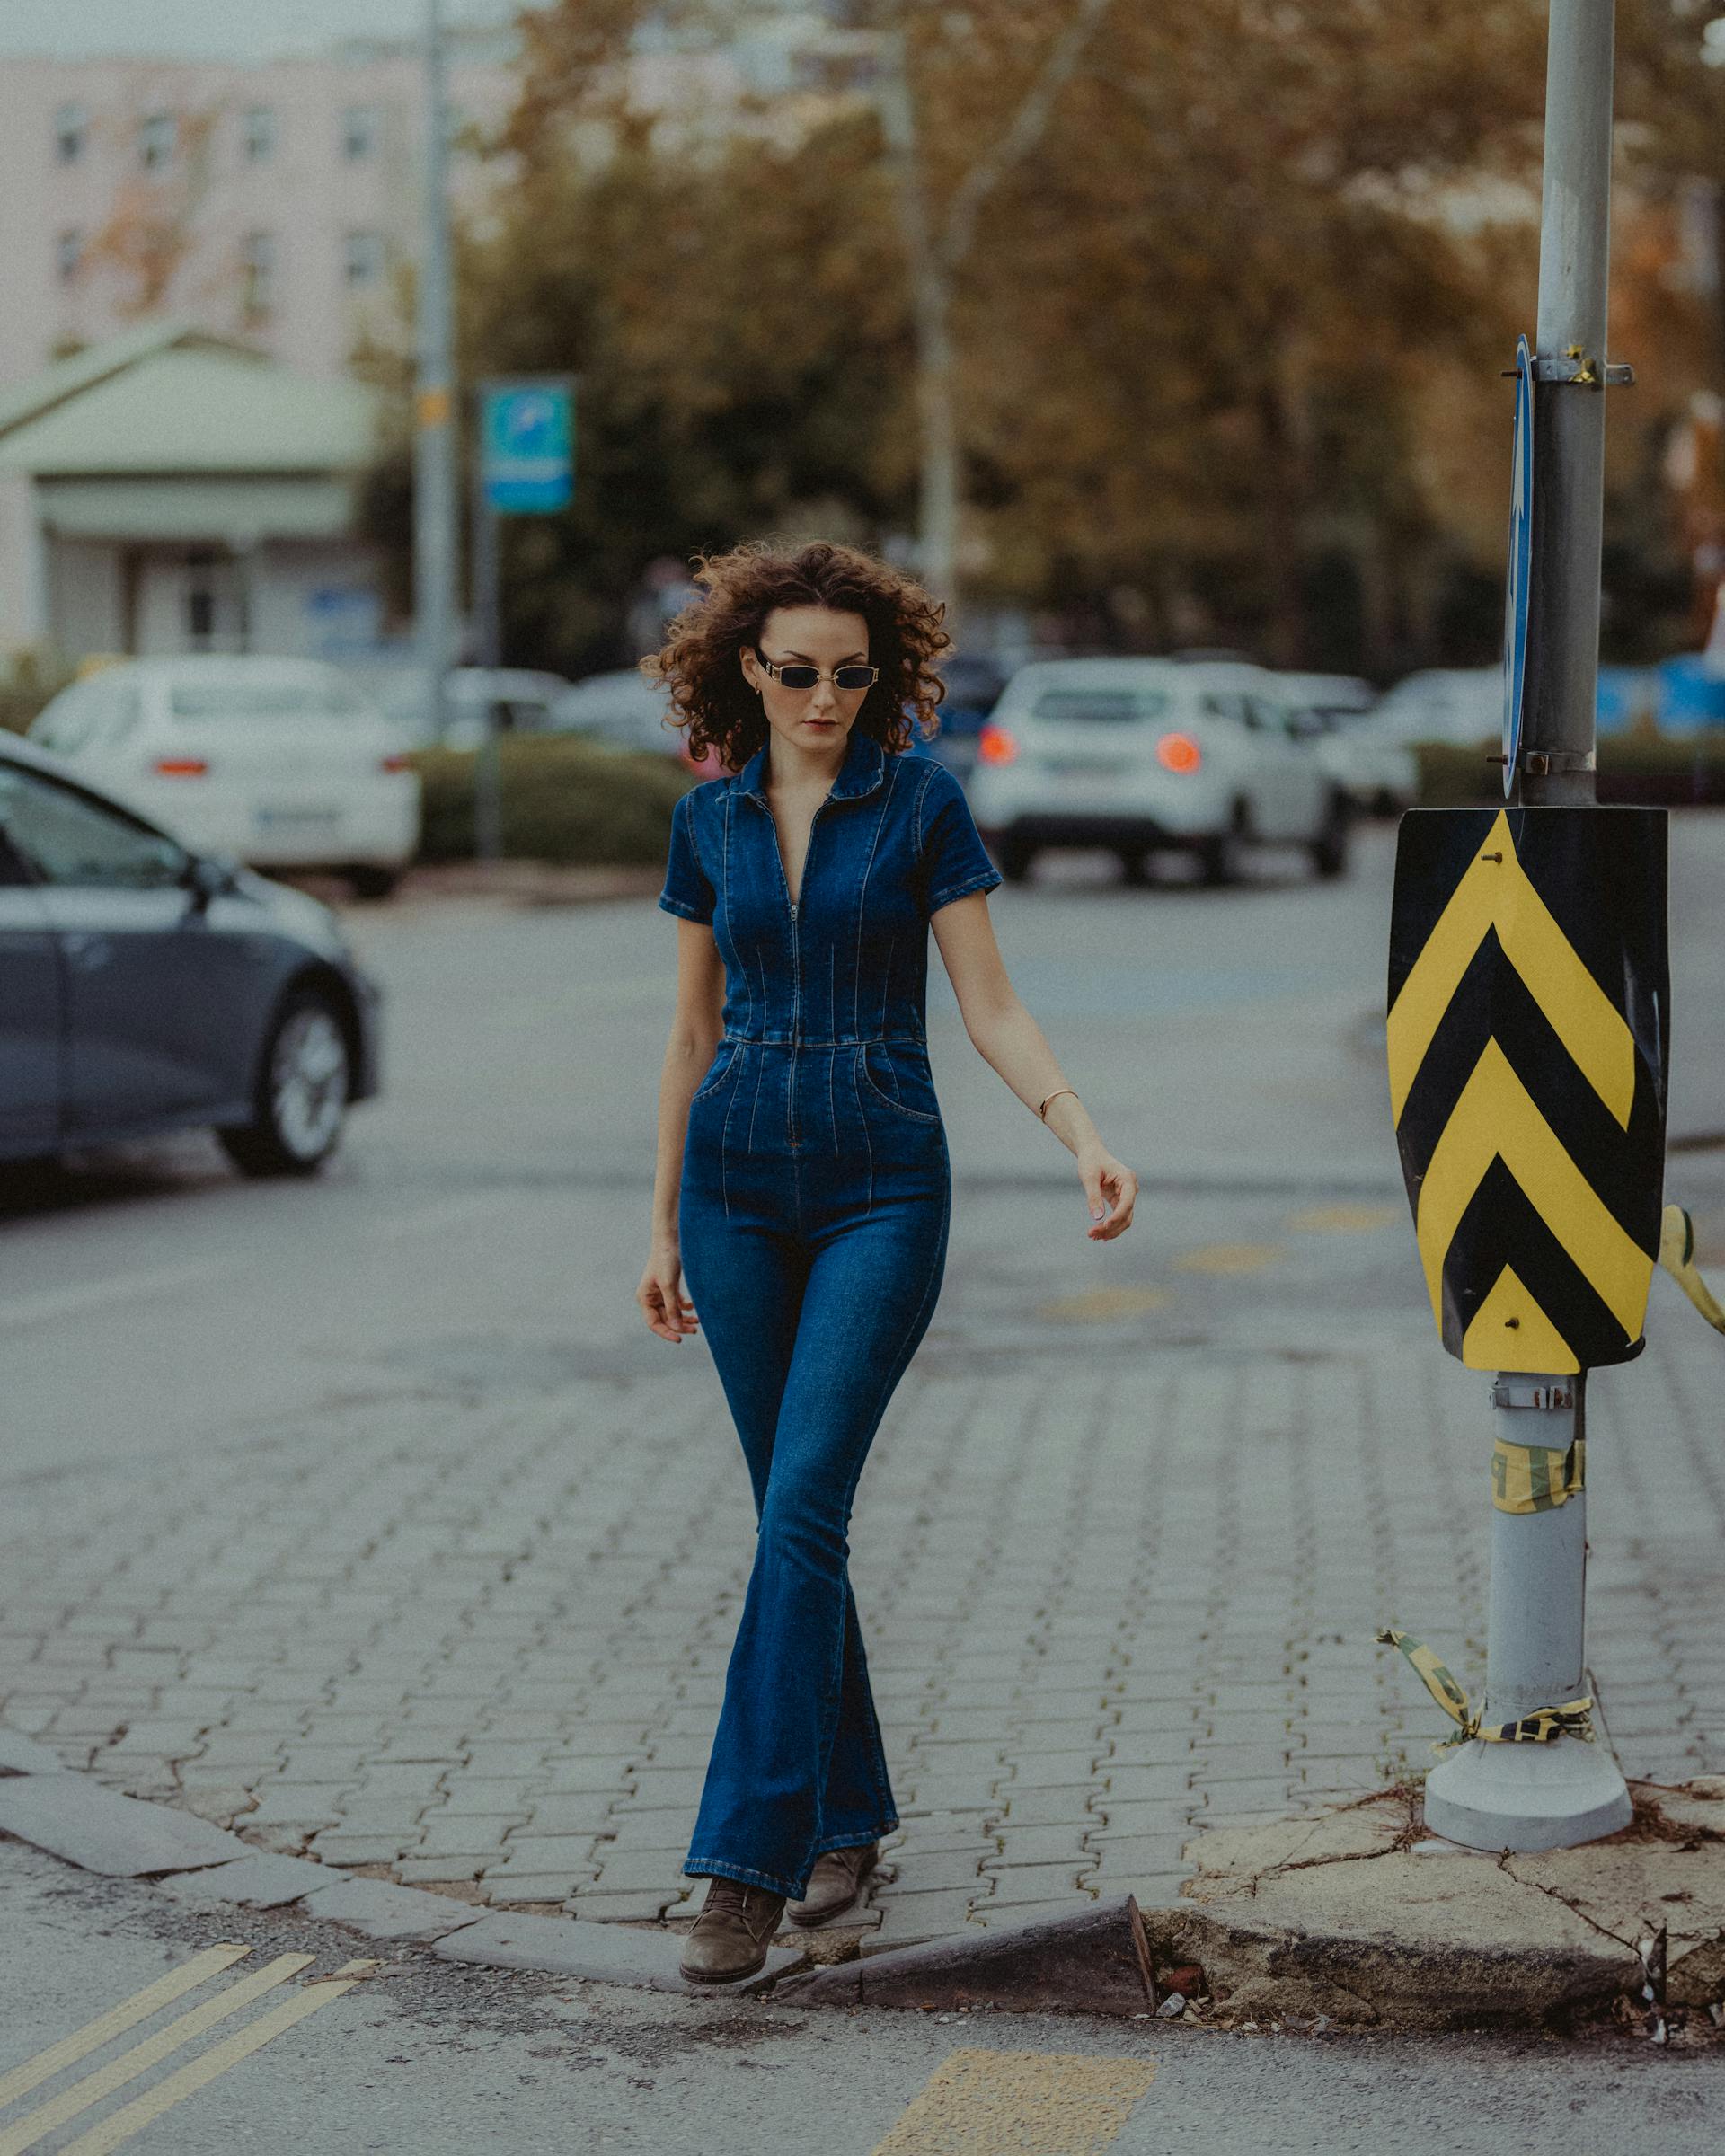 Una mujer caminando por la calle | Fuente: Pexels